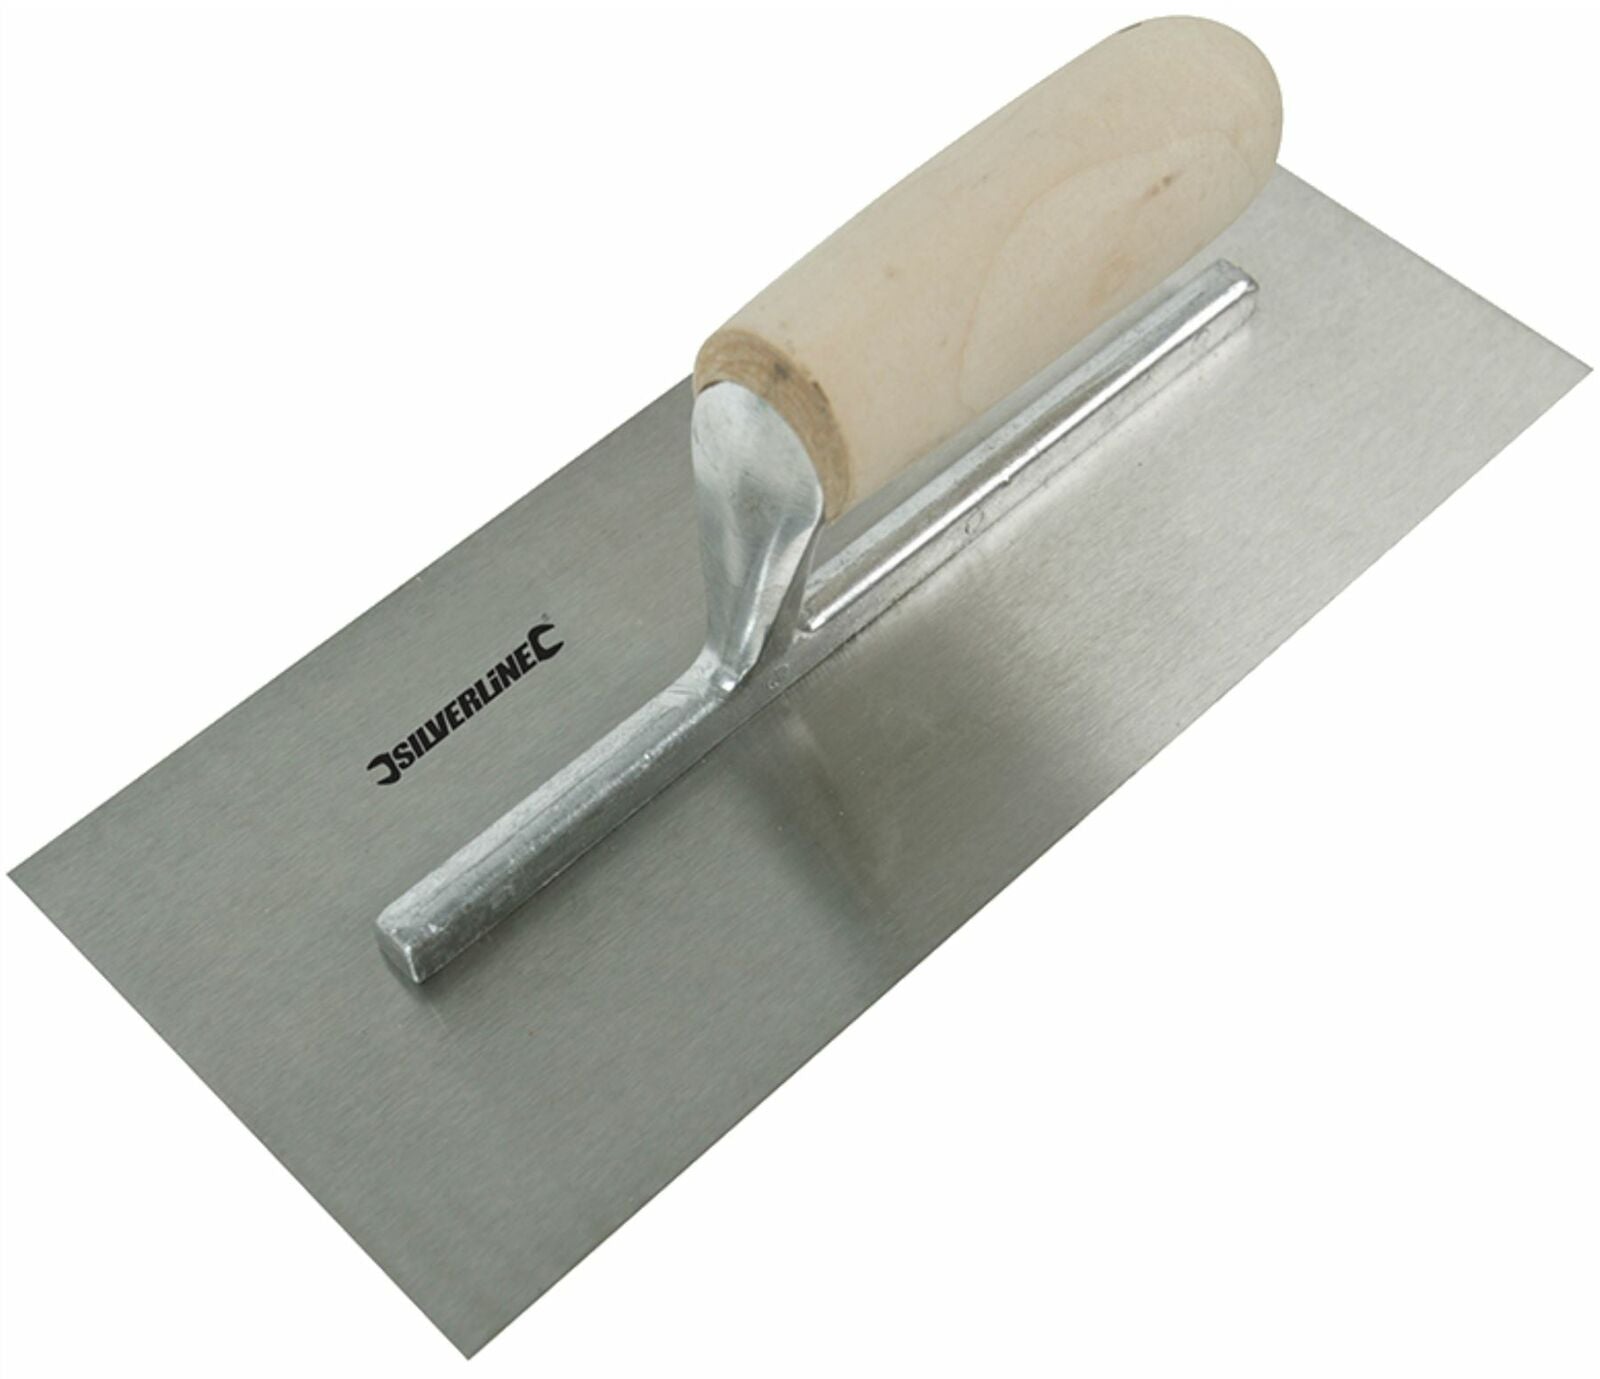 Silverline 5pc Plastering Brick Jointing Gauging Hand Trowel Tradesman Tool Set